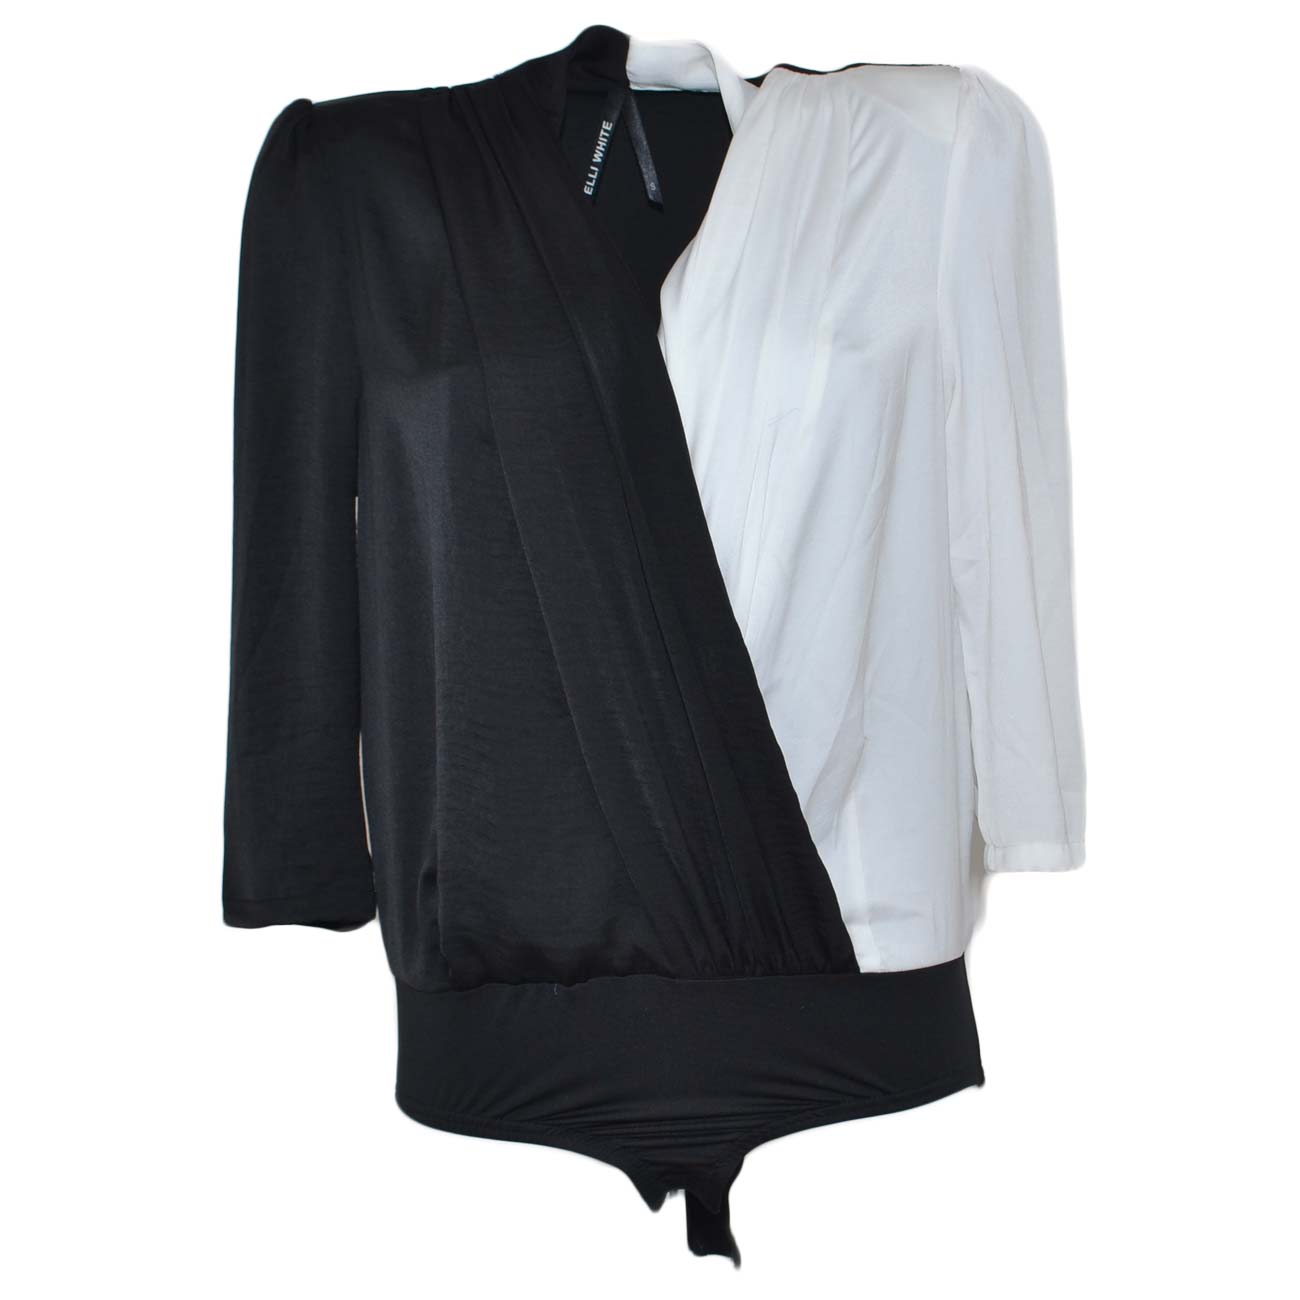 Camicia body donna blusa bicolore bianca e nera manica ampia scollo incrociato a V moda glamour 